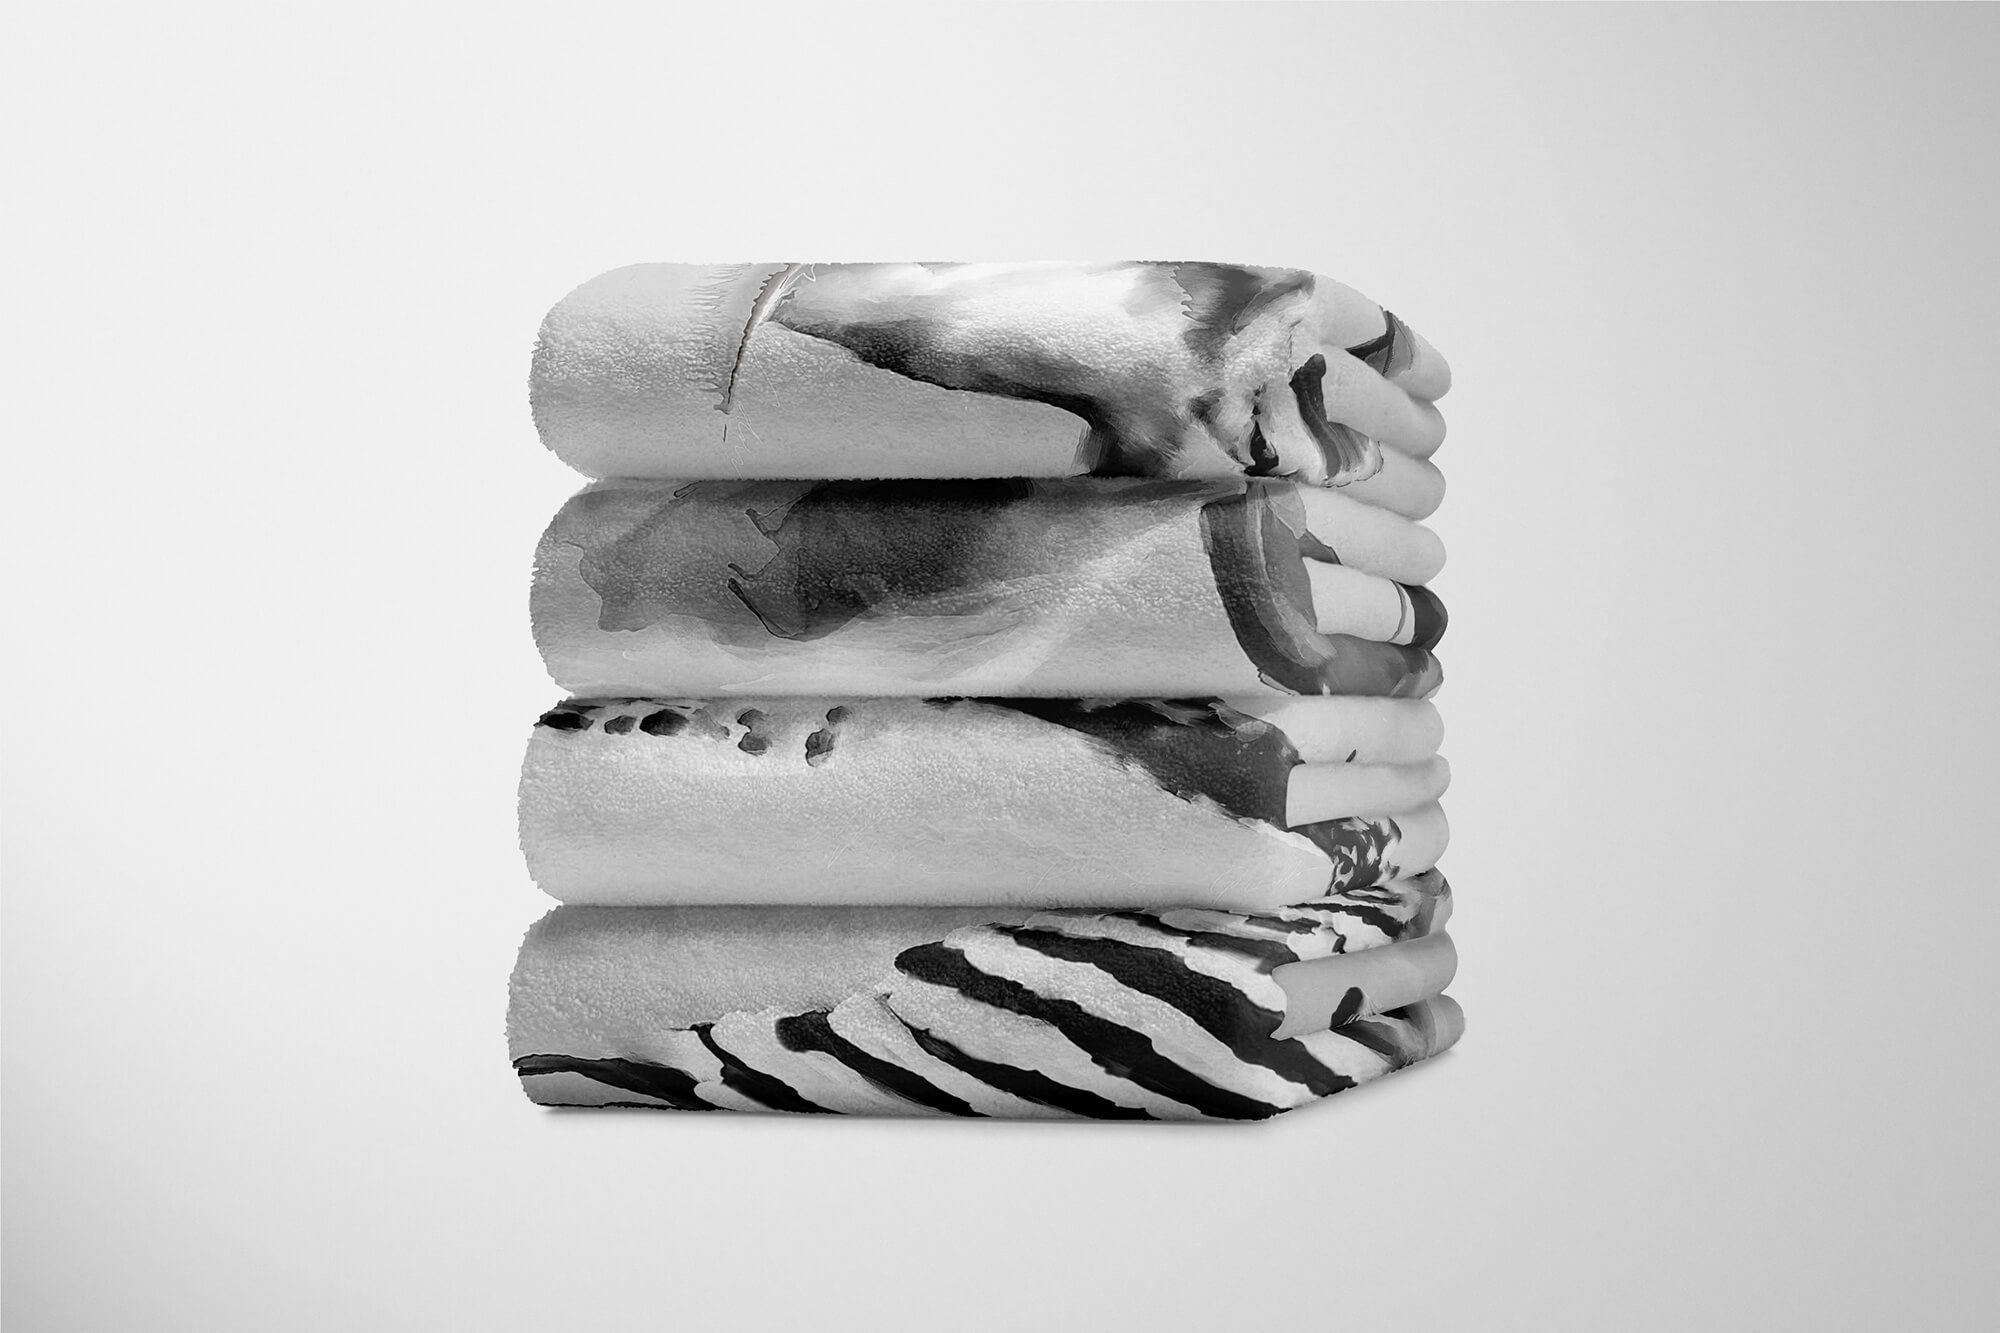 Handtuch (1-St), Art Kuscheldecke Baumwolle-Polyester-Mix Grau Giraffe Motiv, Handtücher Sinus Saunatuch Handtuch Strandhandtuch